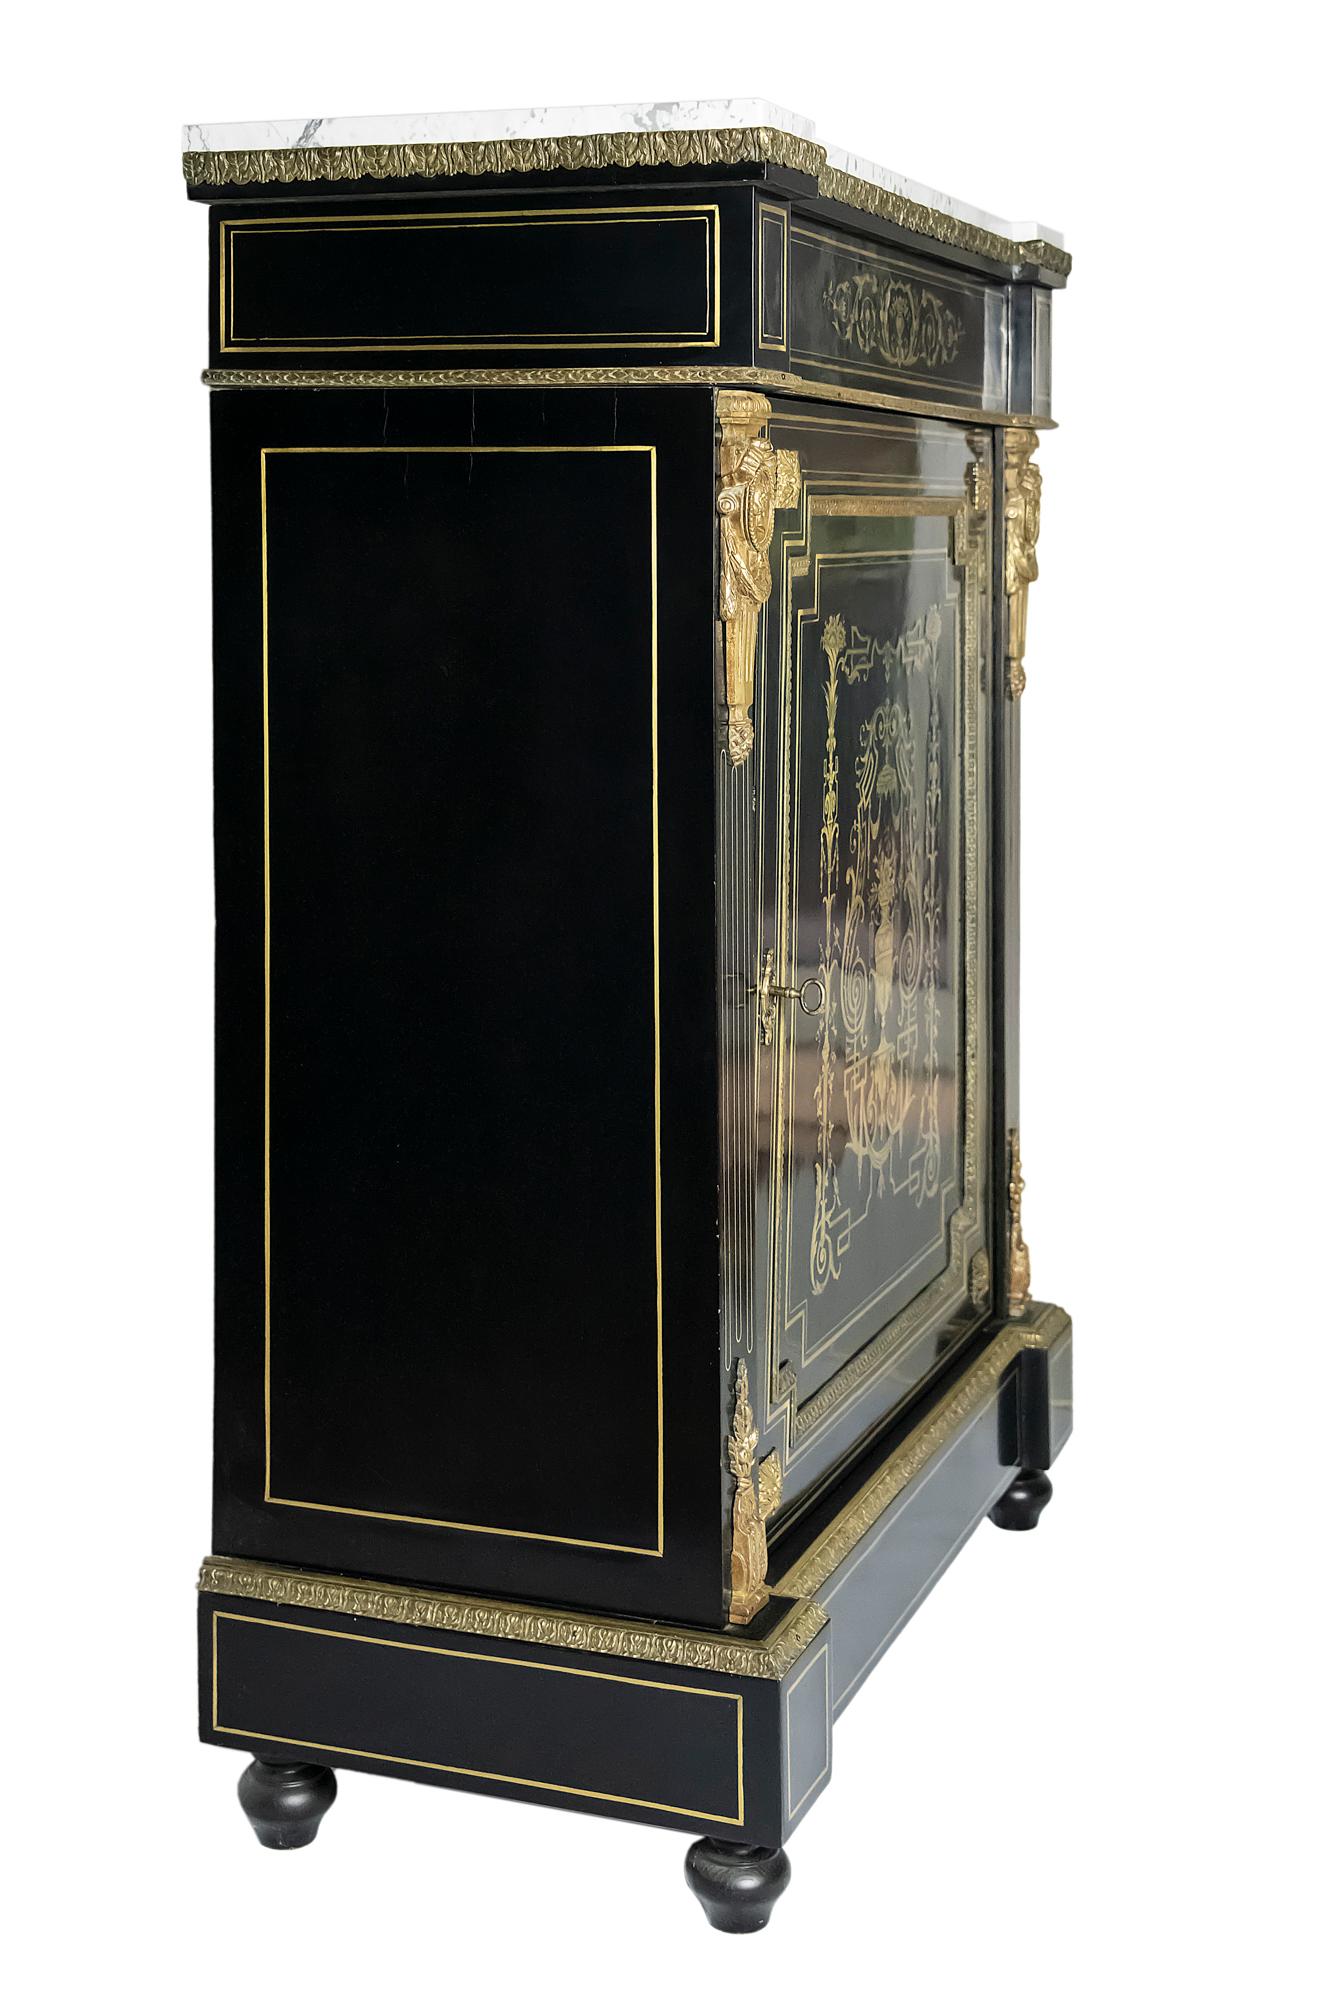 Cabinet français ancien Napoléon III.
Le bois a une surface polie de couleur noire et est décoré d'incrustations en laiton et de détails en bronze sur le côté.
À l'intérieur de l'armoire se trouvent deux étagères.
Le dessus du meuble est en